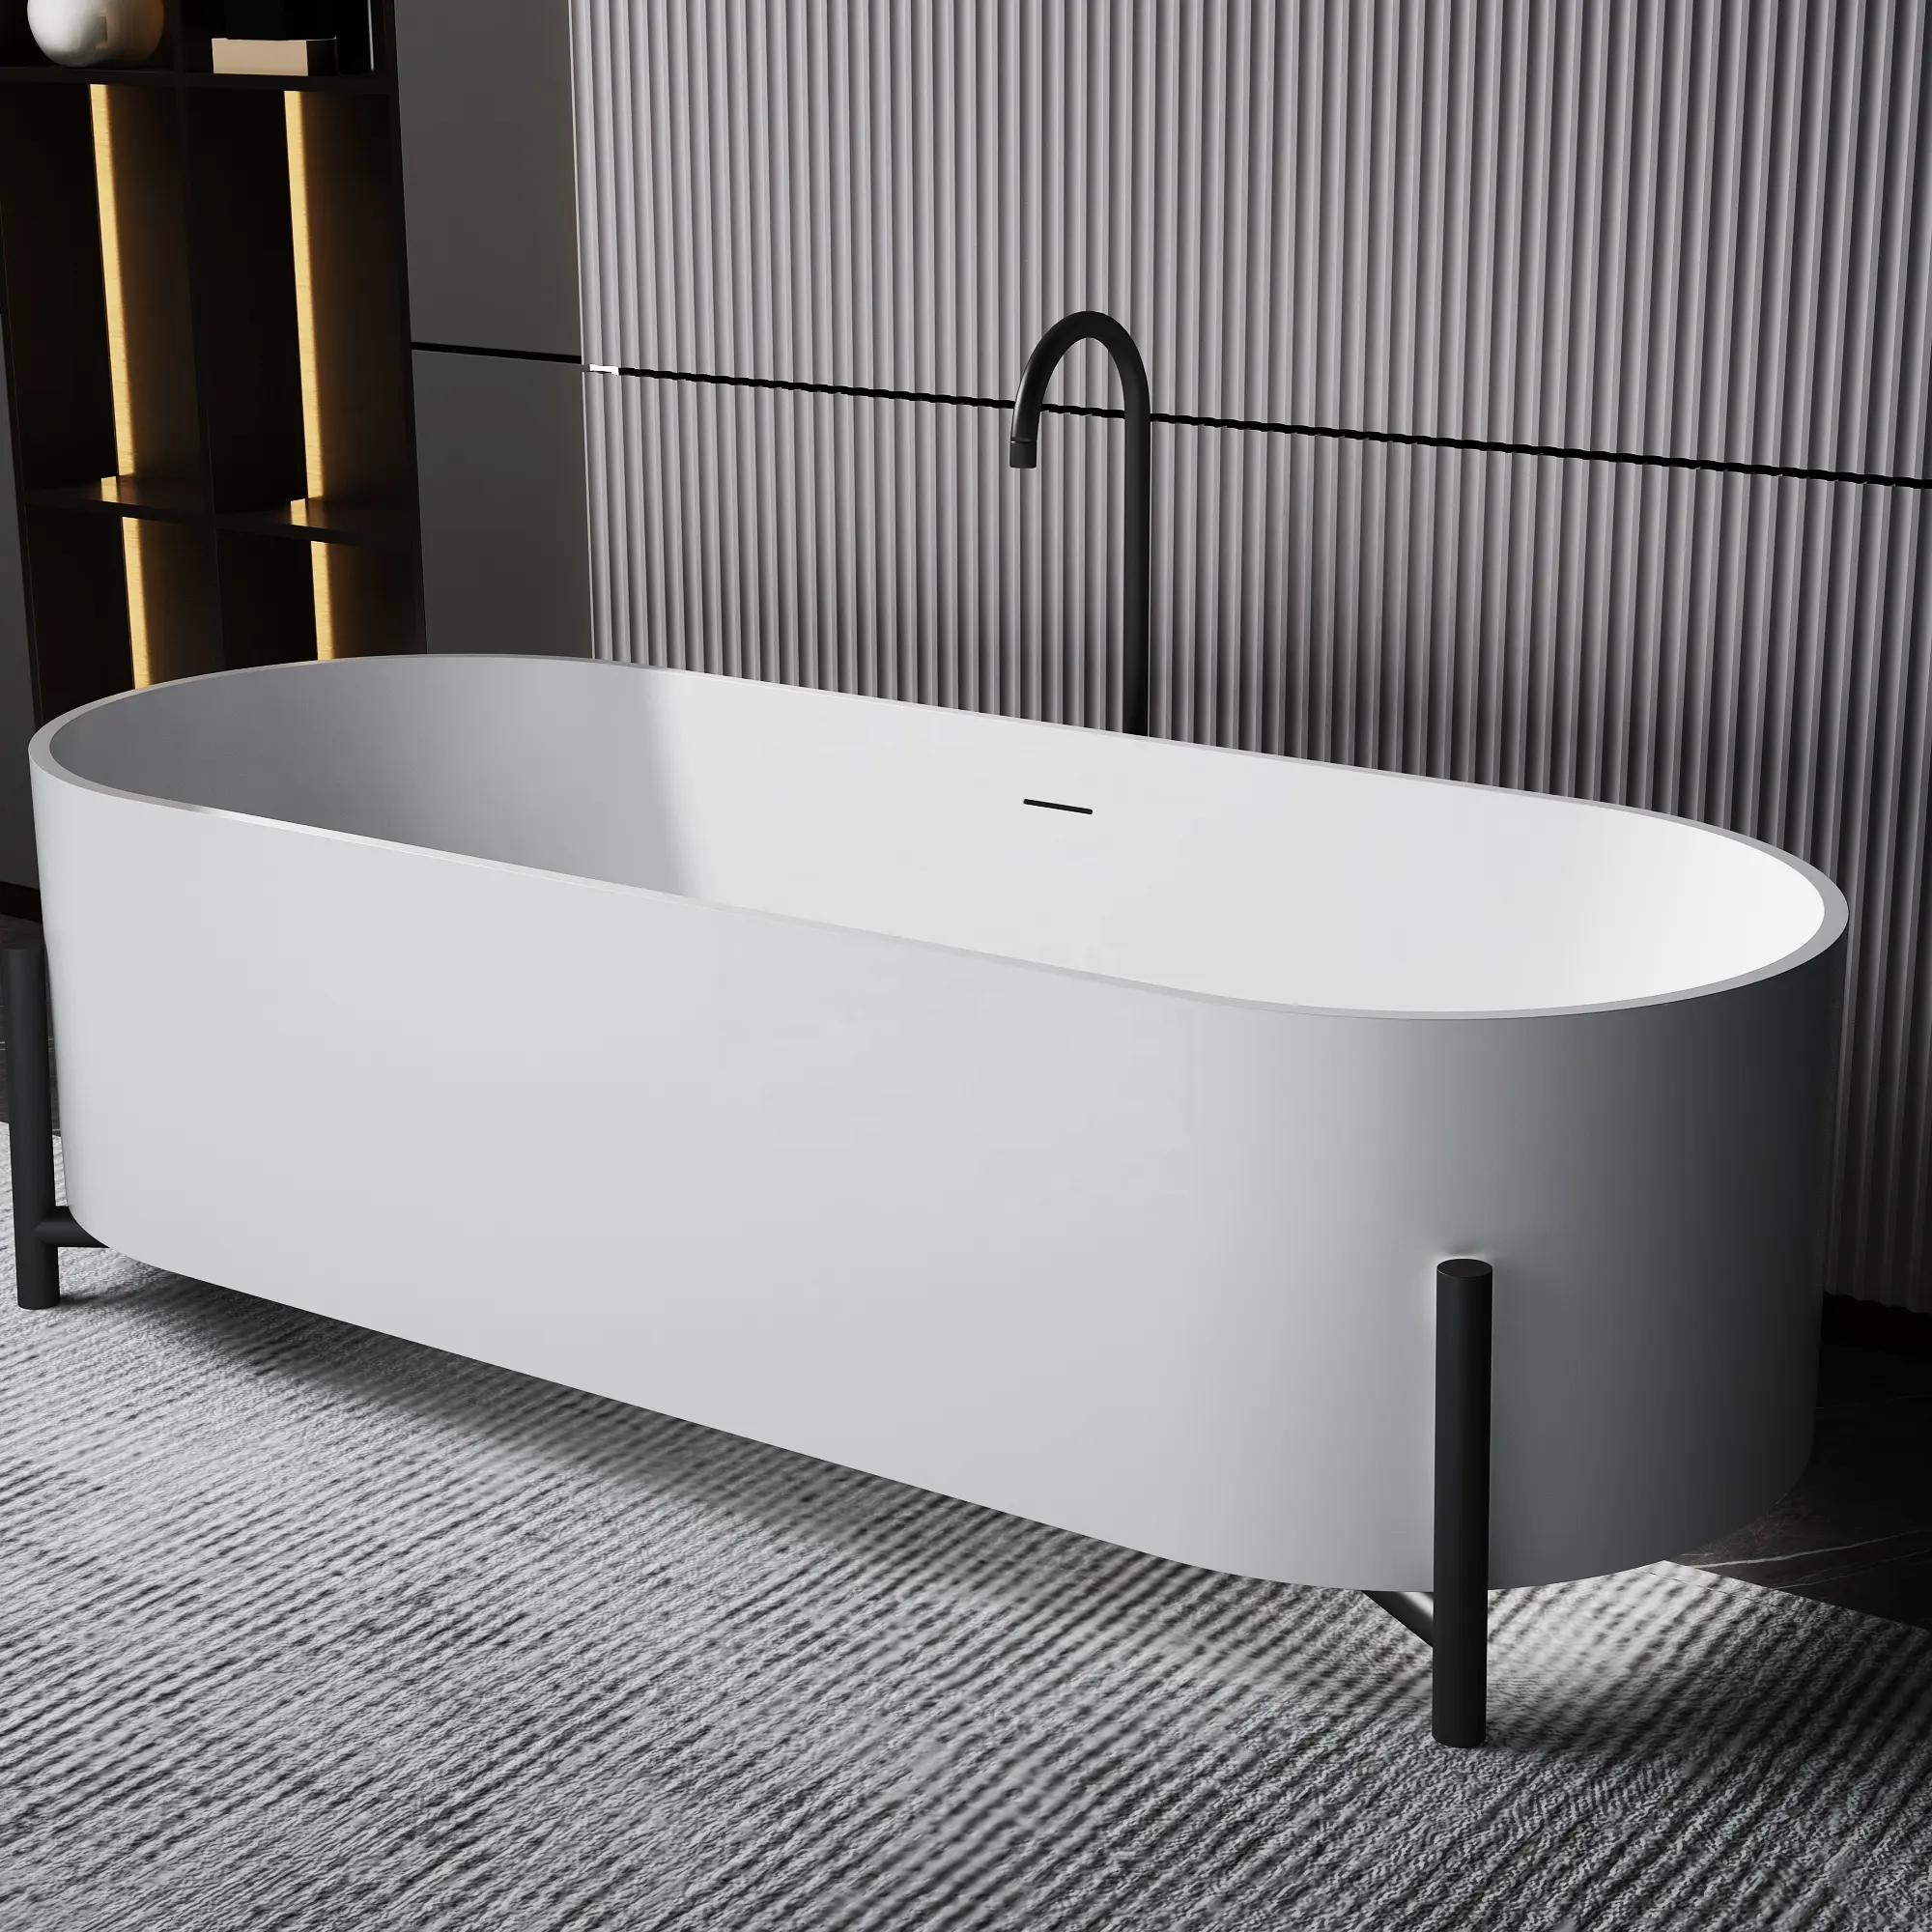 Baignoire moderne pour adultes 2023 nouvelle baignoire à surface solide intérieure autoportante acrylique luxe blanc salle de bain Gua 3 ans Center